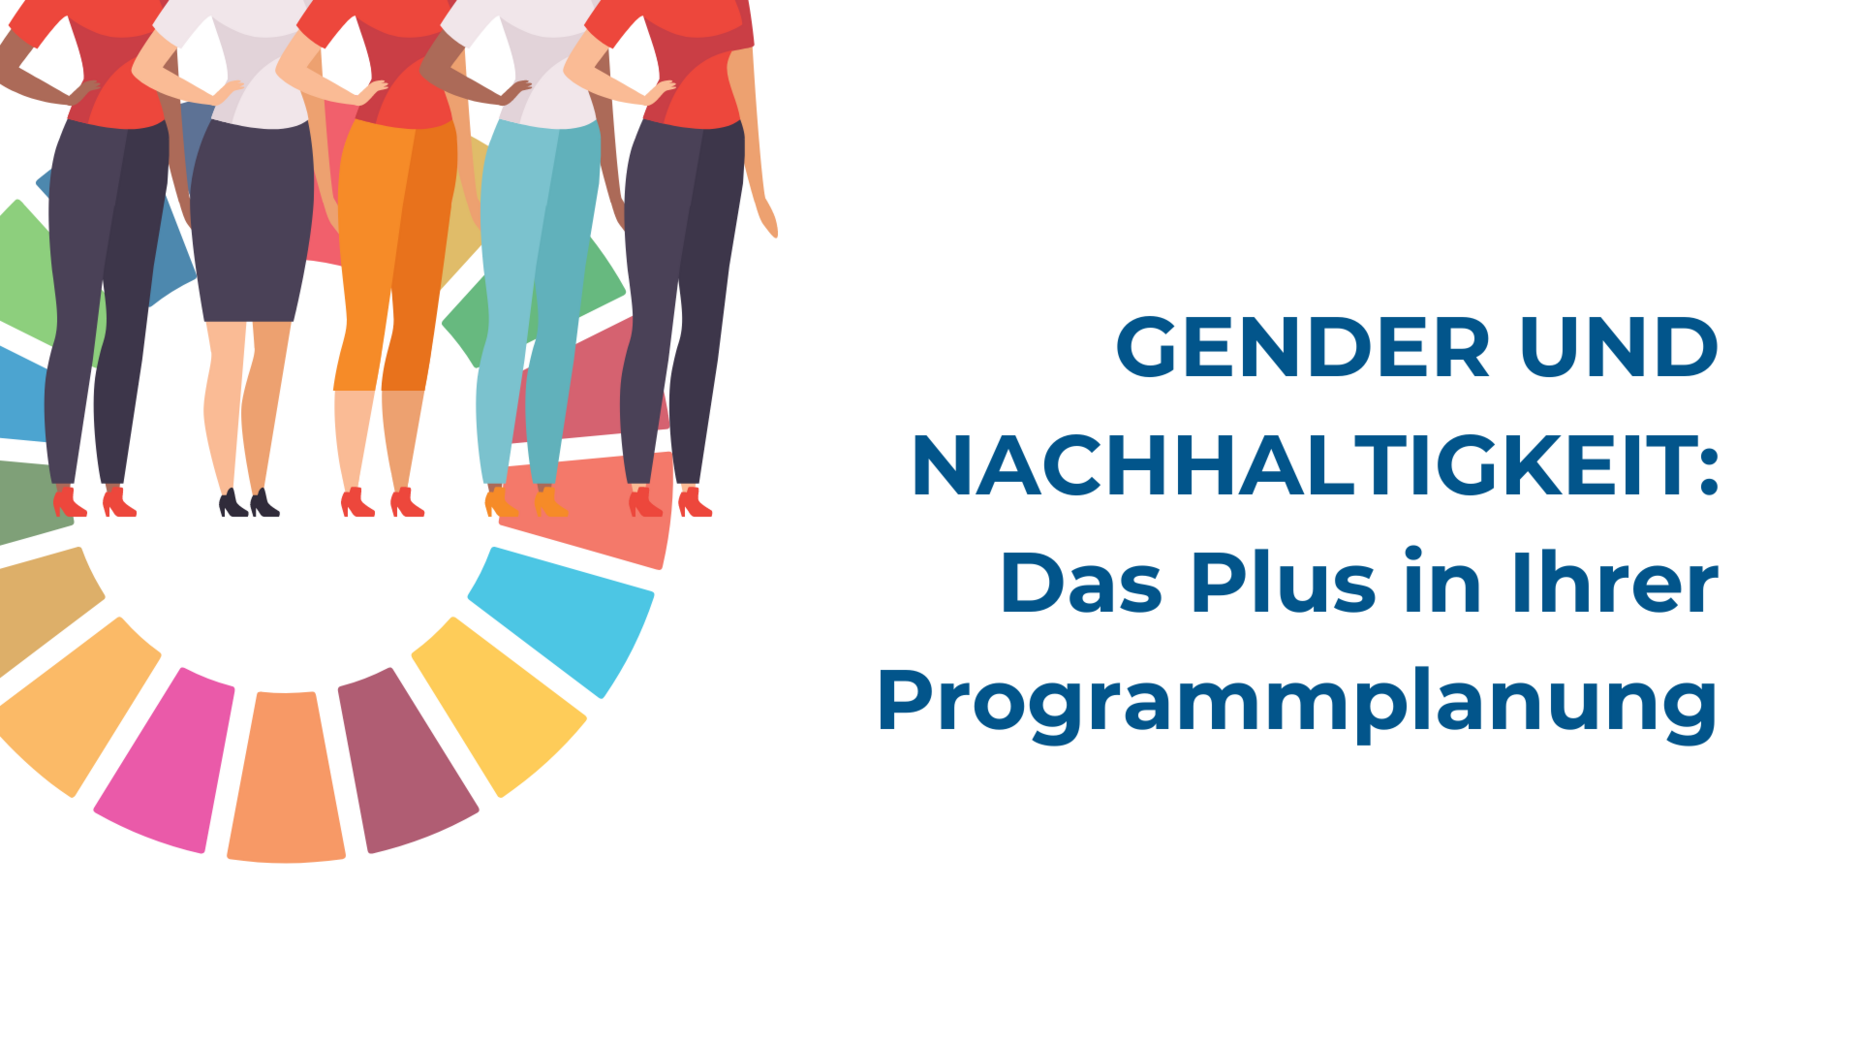 SDG-Kreis und Frauen verschiedener Nationalitäten als grafische Untermalung der Impulsveranstaltung Gender und Nachhaltigkeit